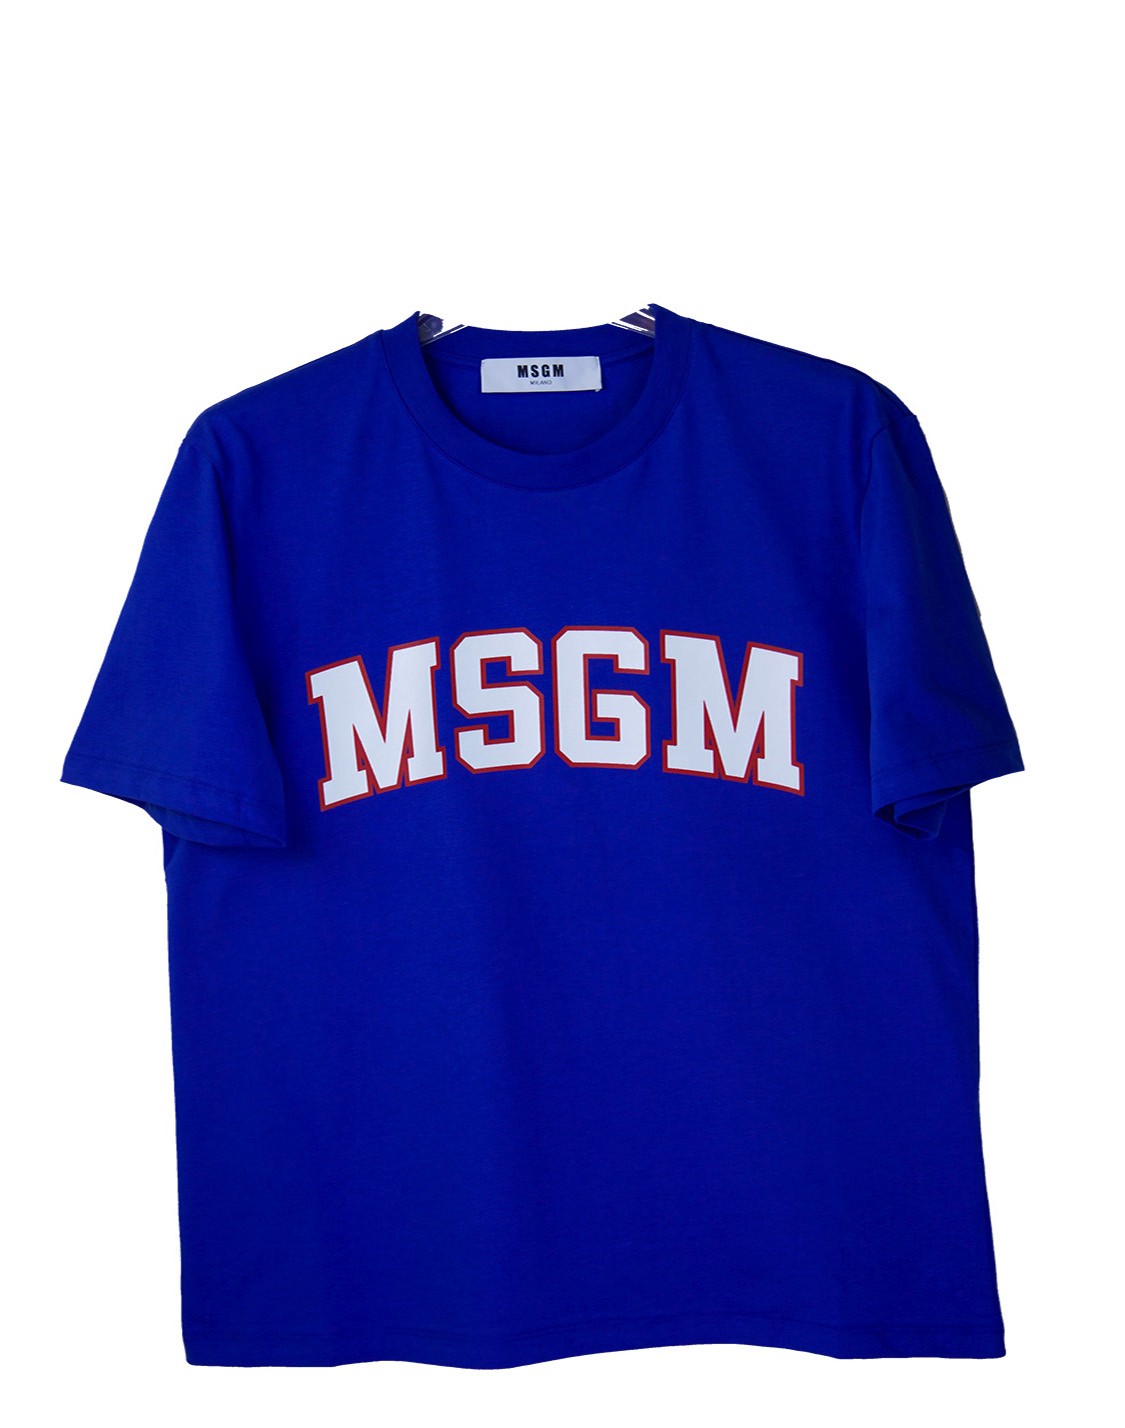 shop MSGM Saldi T-shirts: T-shirt MSGM a maniche corte, girocollo, blu elettrico e logo bianco bordato di rosso.

Composizione: 100% cotone. number 864